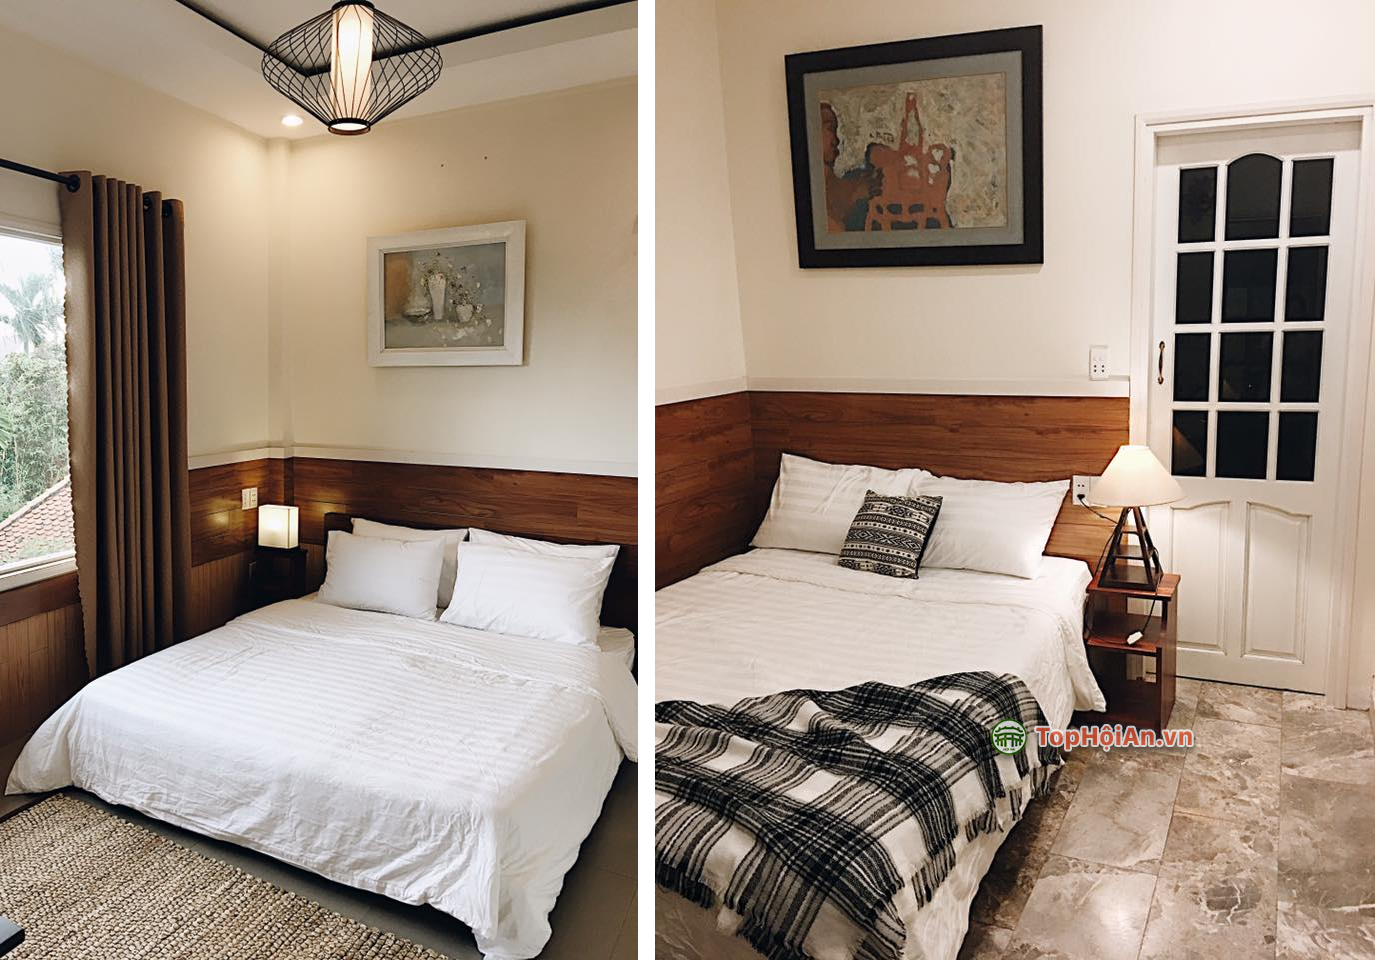 Thiết kế phòng nghỉ của Bamboo Hoi An Homestay khá đơn giản với gam màu trắng dịu nhẹ